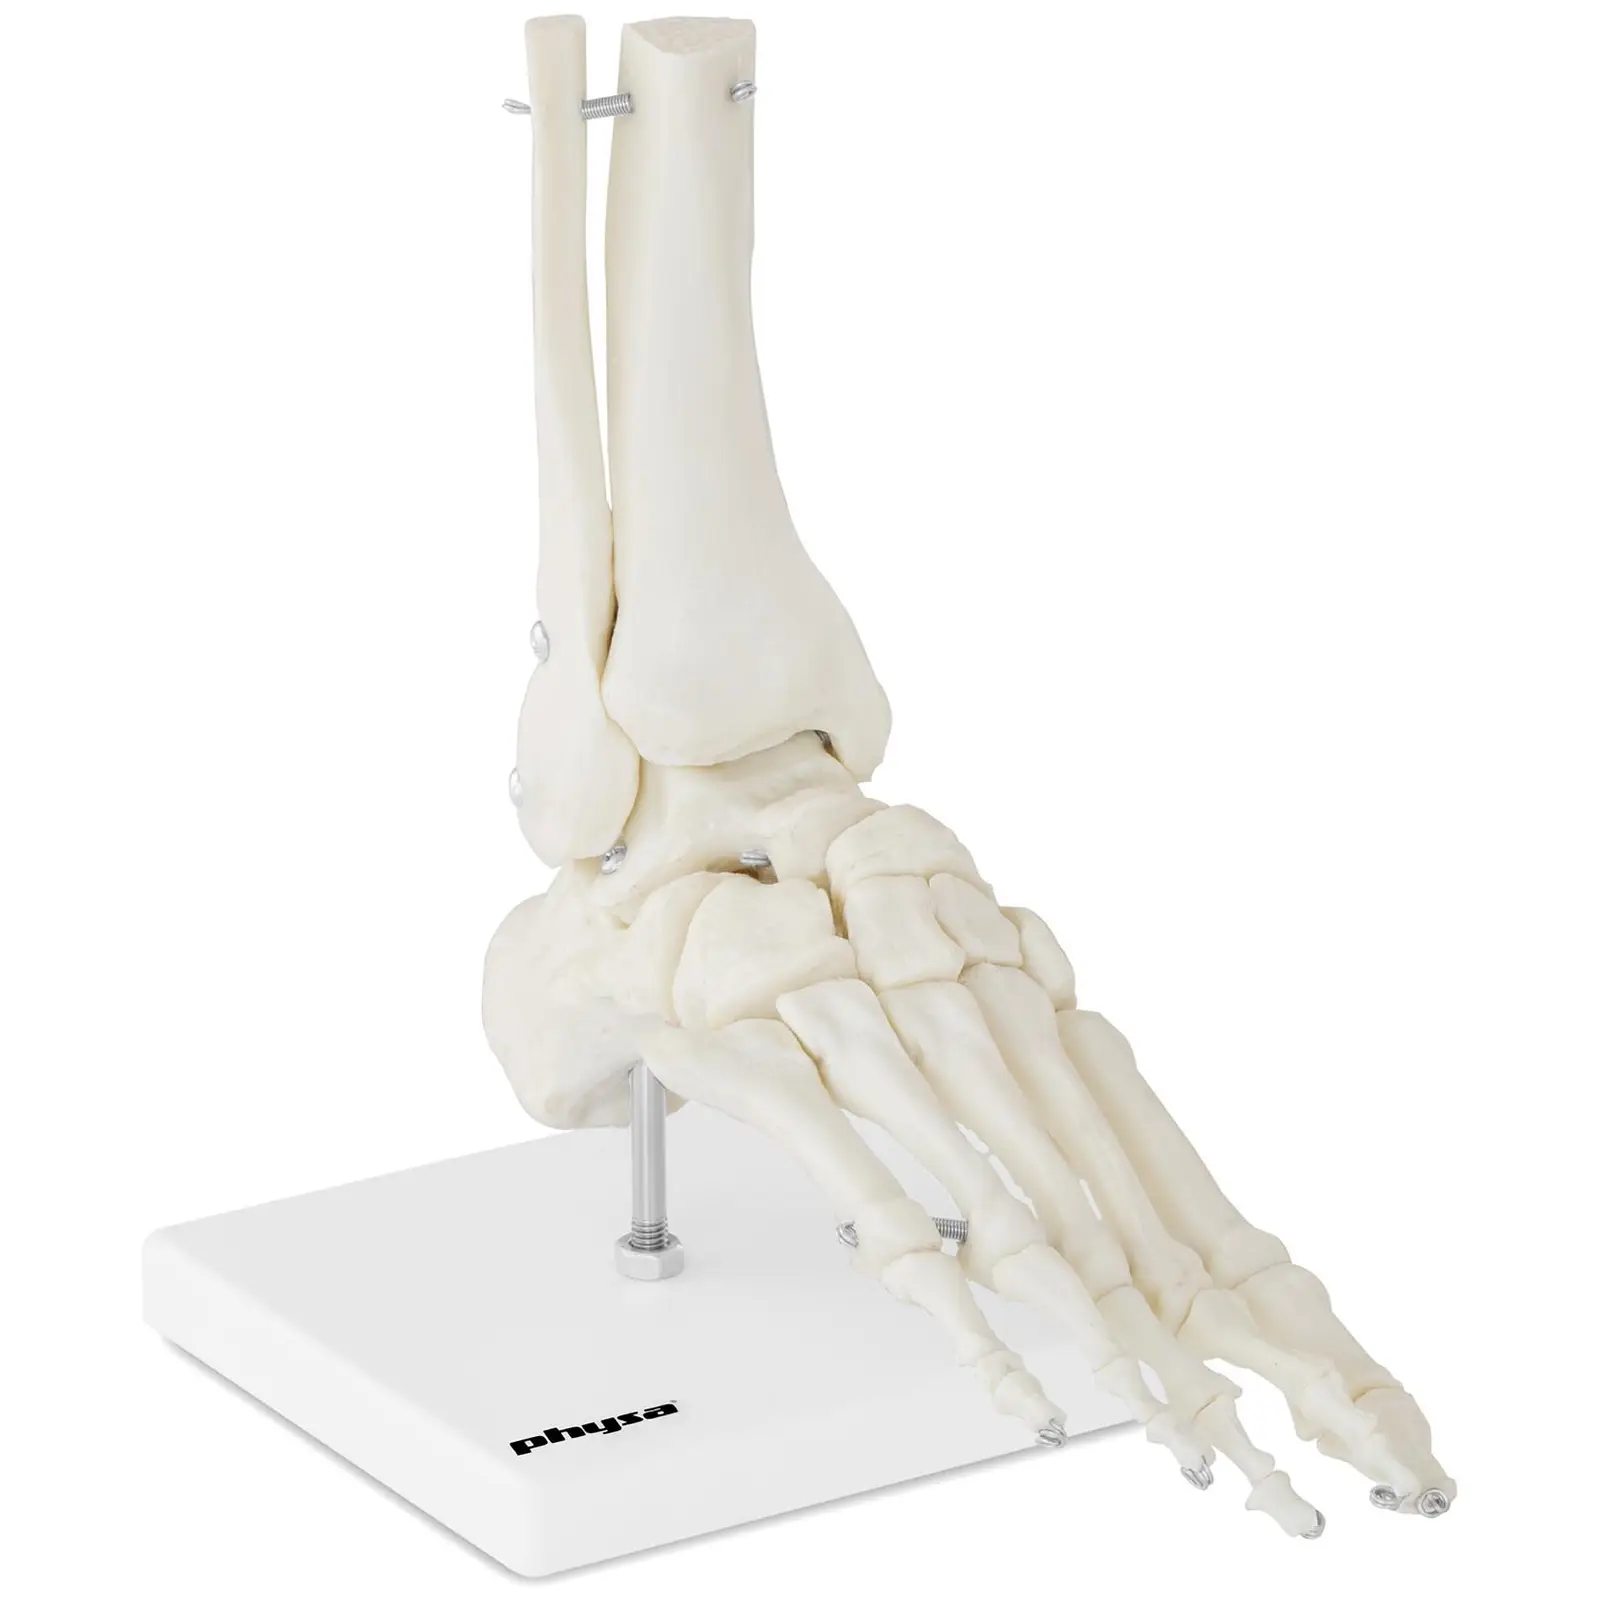 Model kostry chodidla a kotníku - Anatomické modely physa